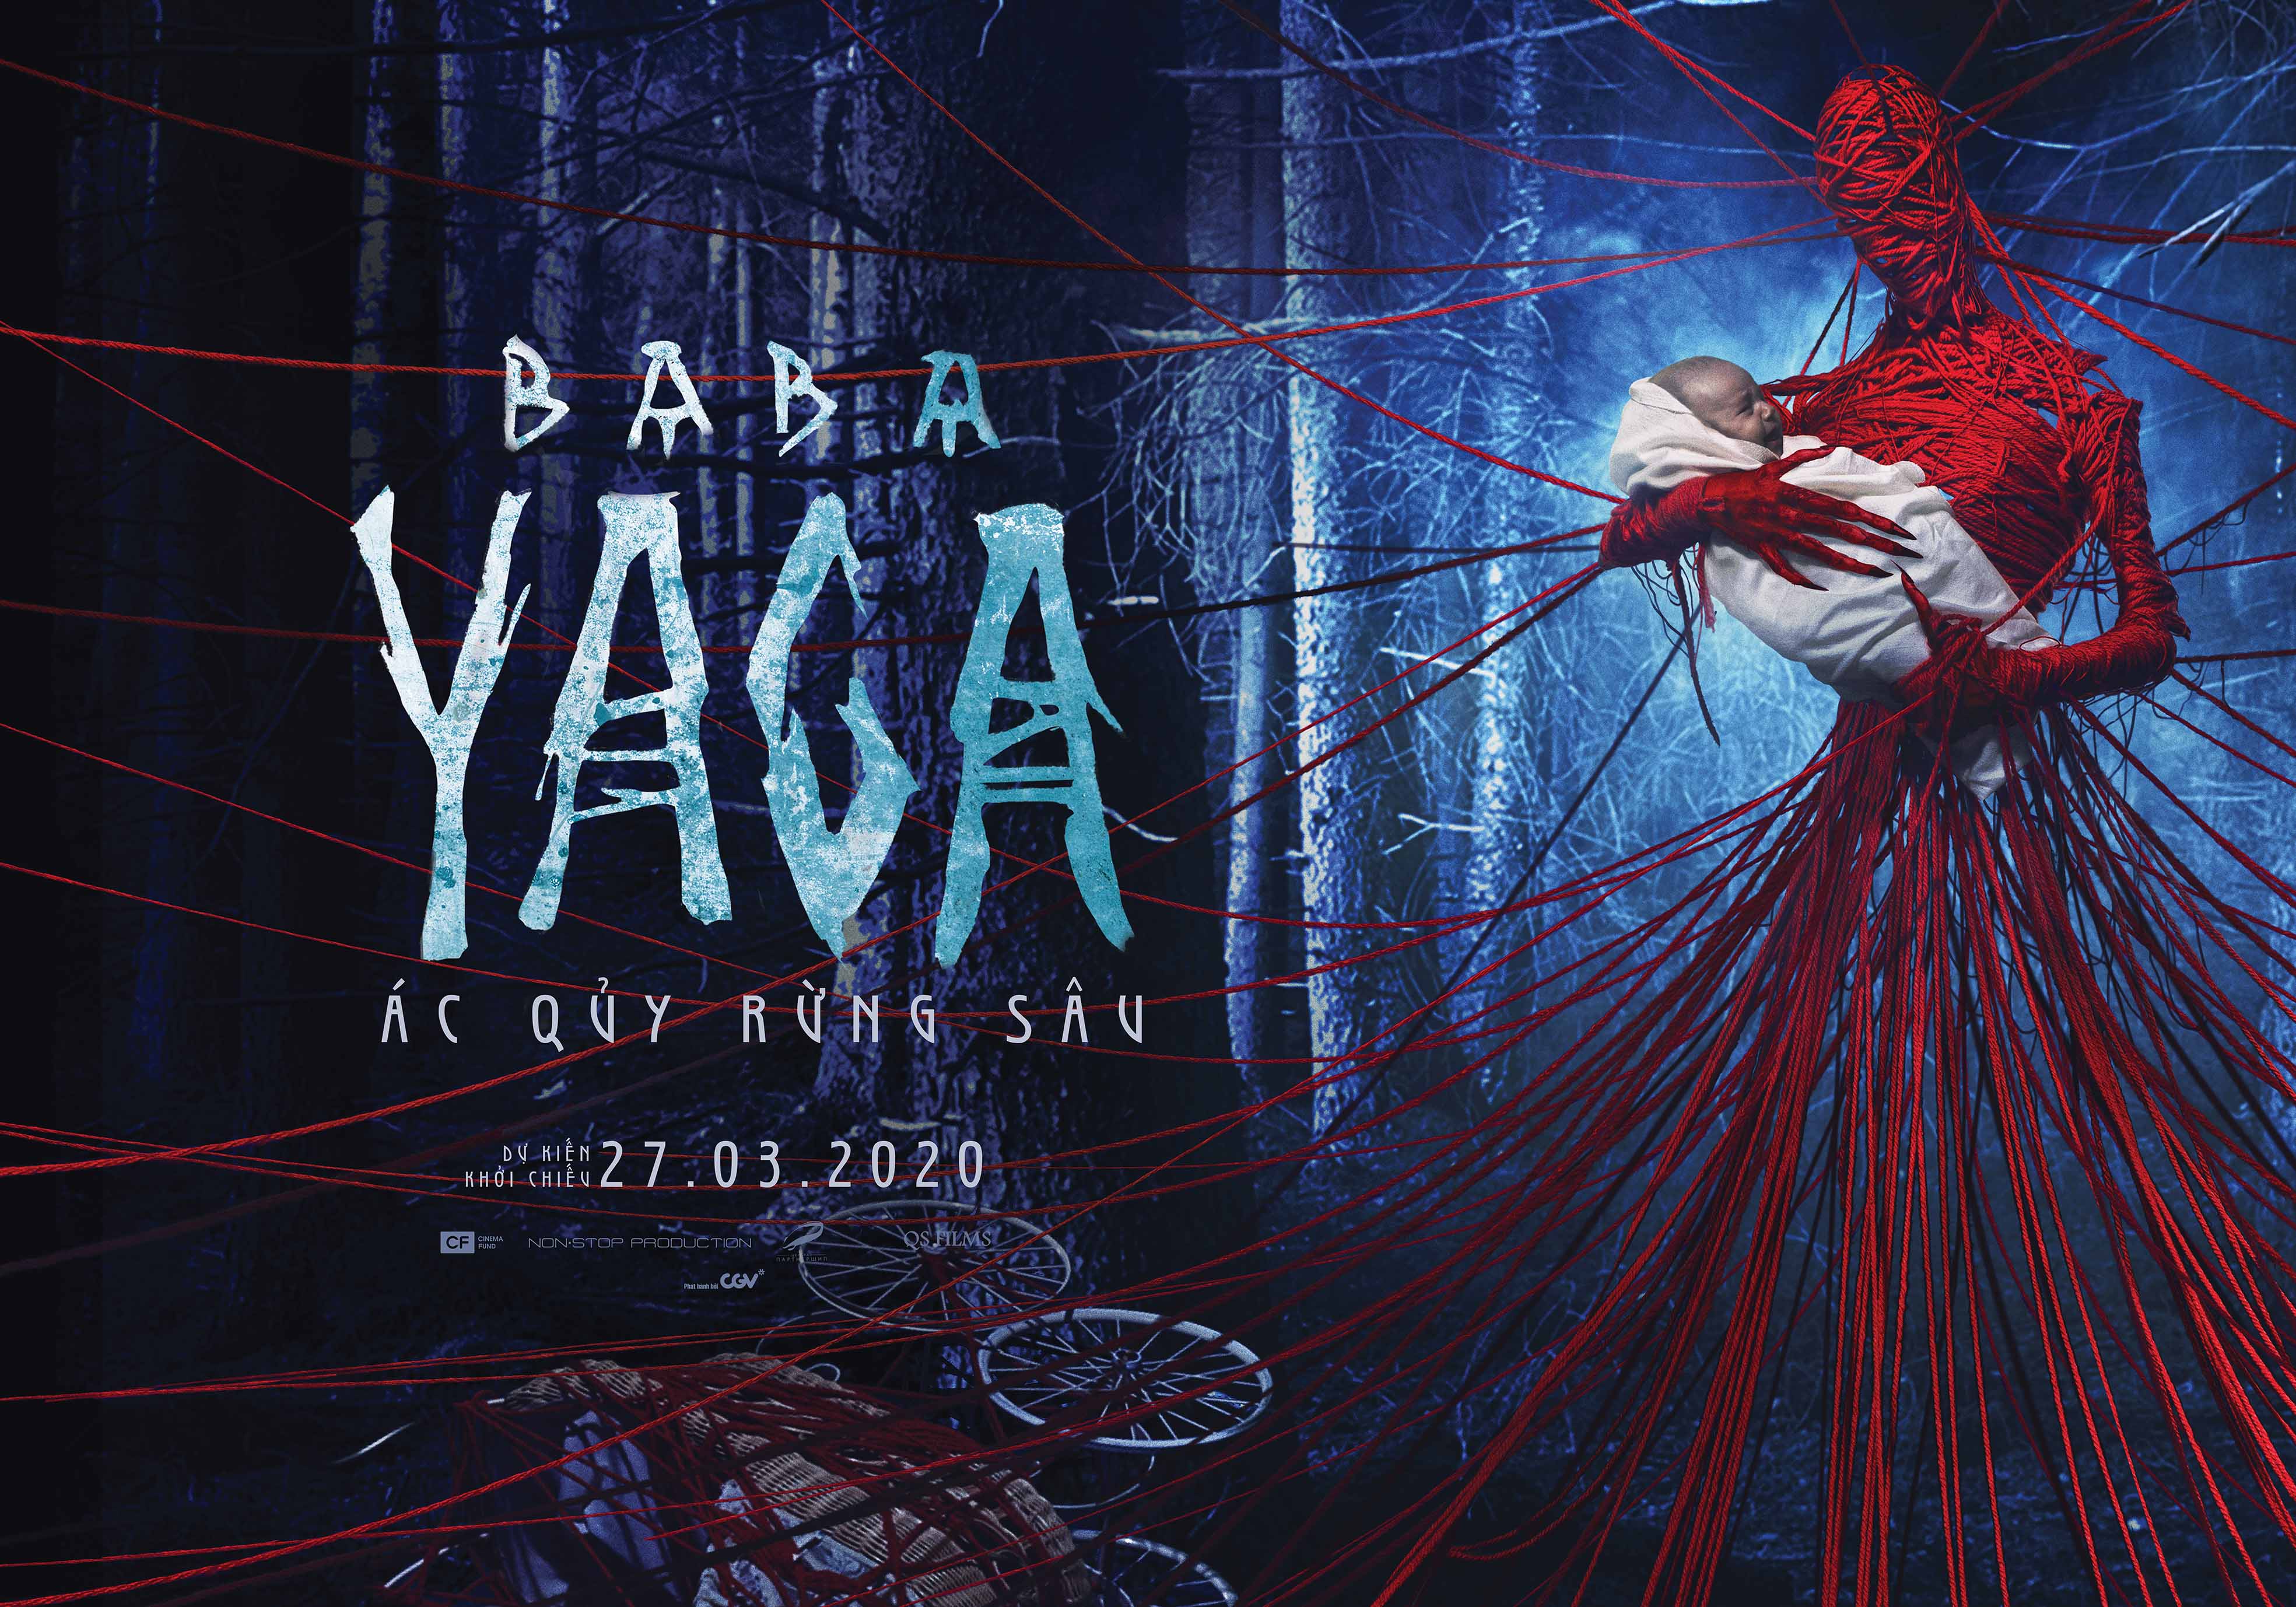 Hậu John Wick, thương hiệu Baba Yaga trở lại màn ảnh rộng với câu chuyện kinh dị đầy ám ảnh